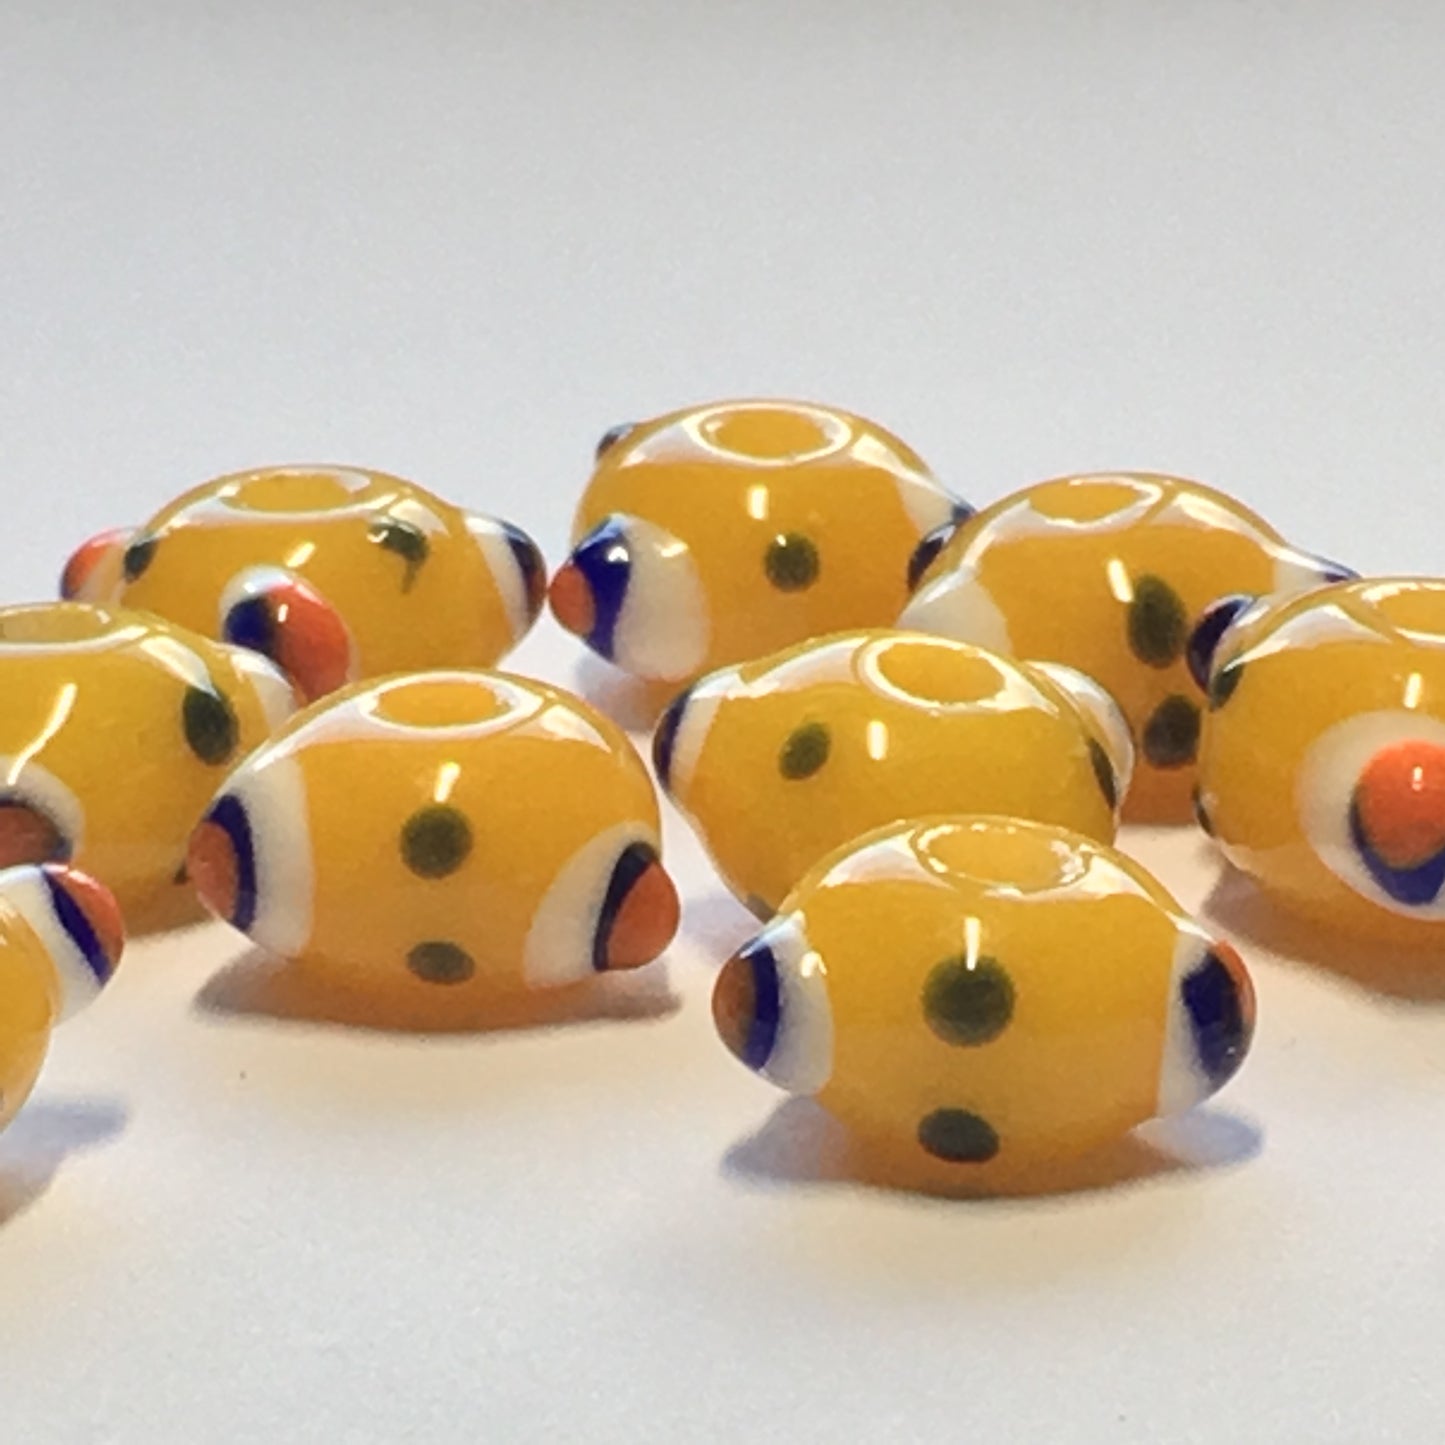 Bumpy Yellow Glass Lampwork Beads, 6 x 11 mm - 10 Beads